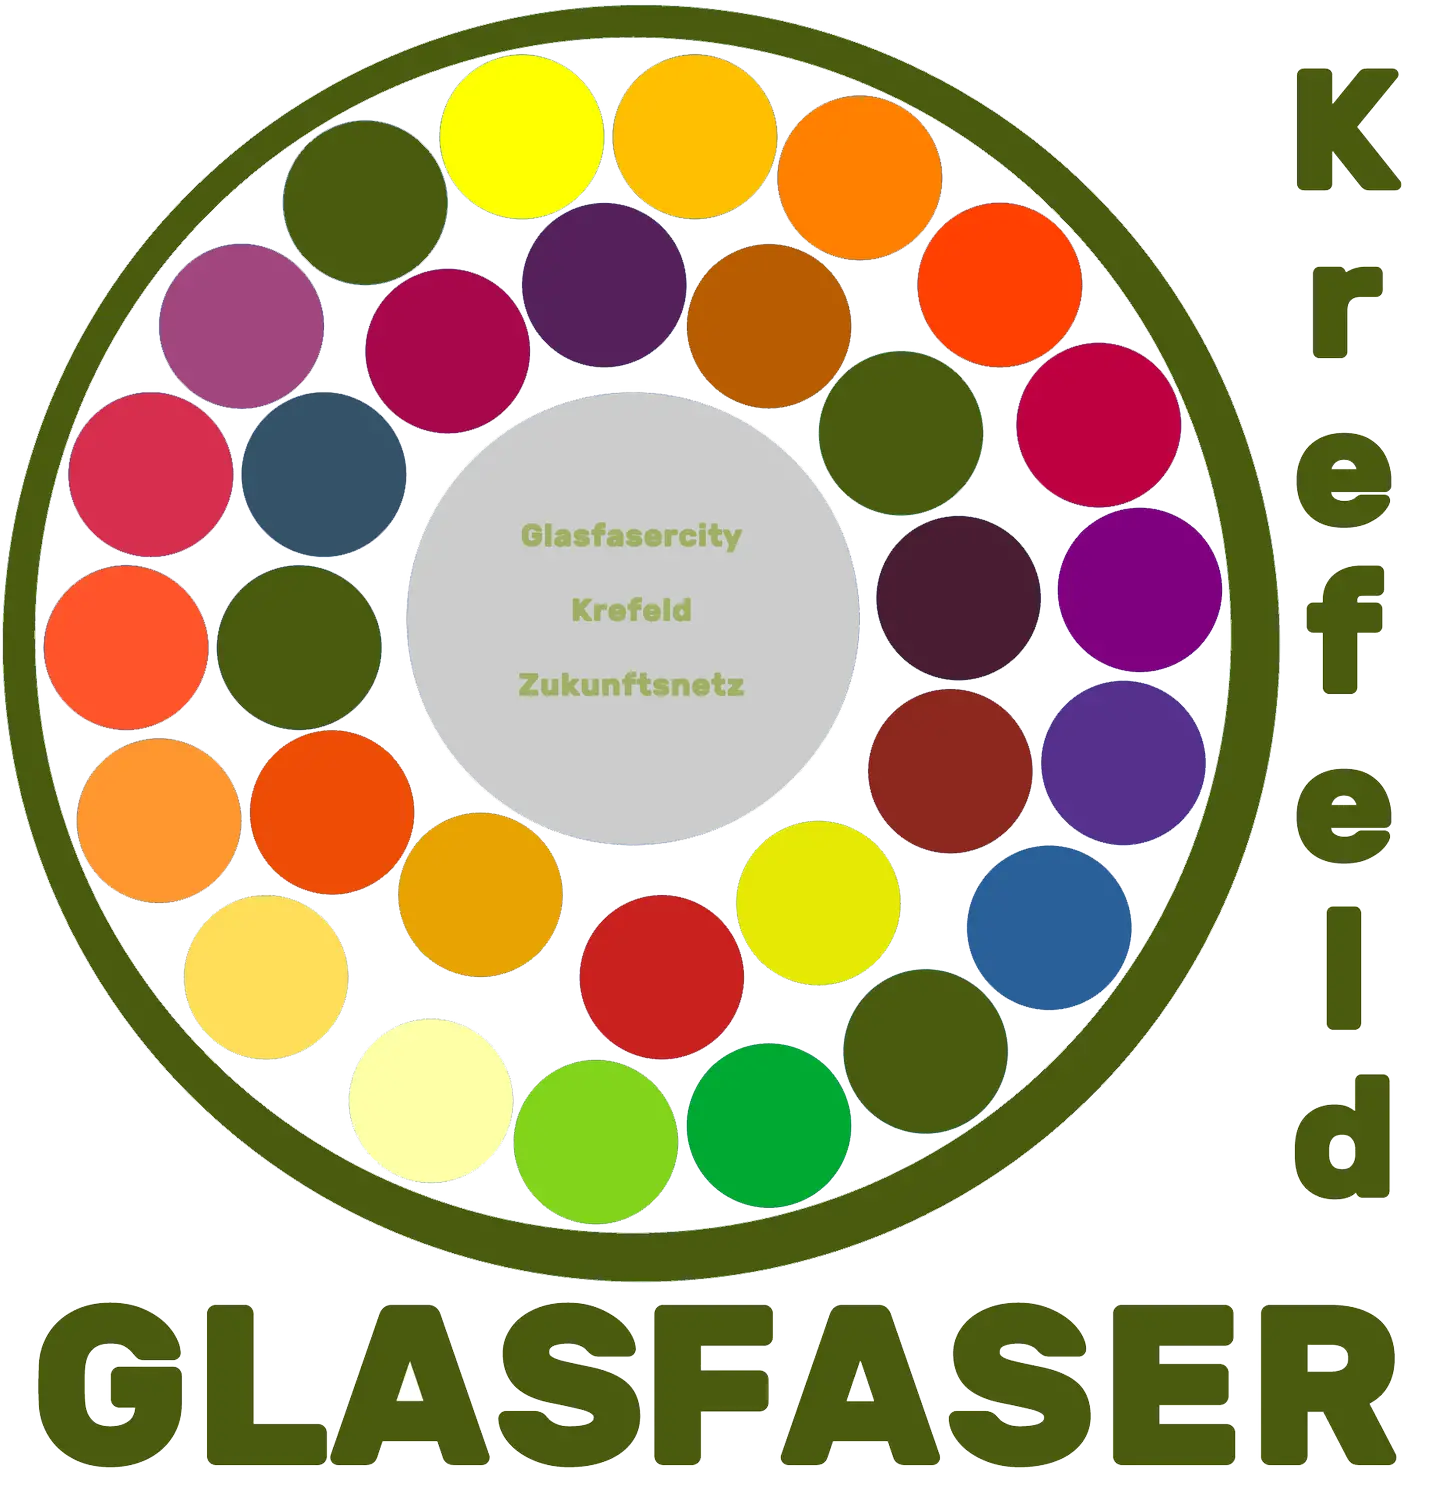 Logo "PRO Glasfaser Krefeld" Kreis mit angedeuteten Glasfaserlitzen und 2x Text "Glasfasercity Krefeld Zukunftsnetz" sowie Schriftzug "Glasfaser Krefeld"